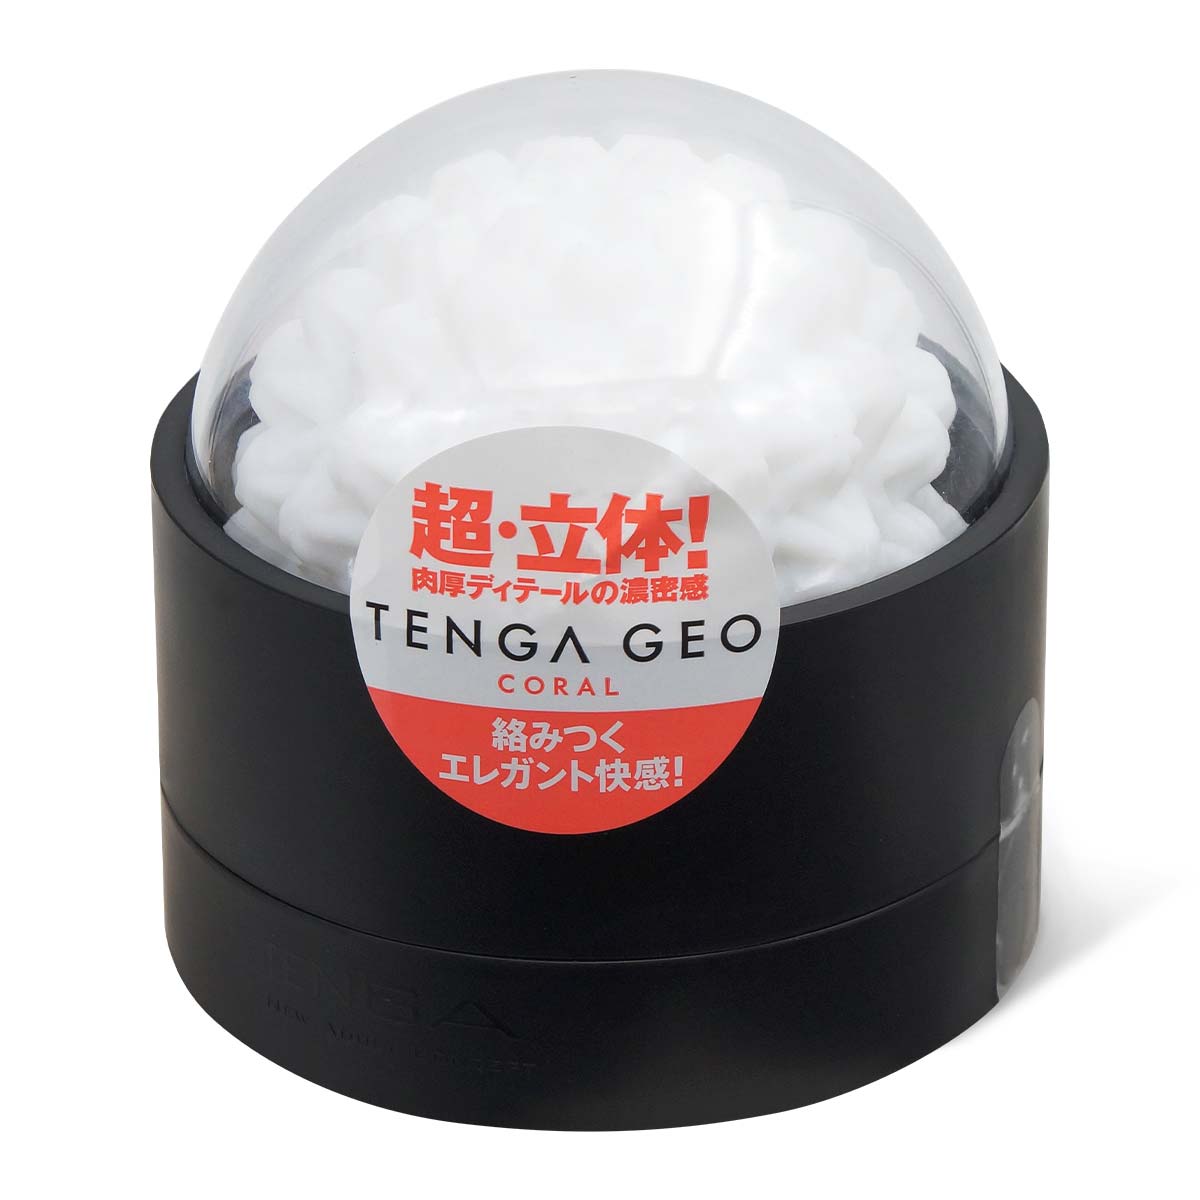 TENGA GEO 珊瑚球-p_1